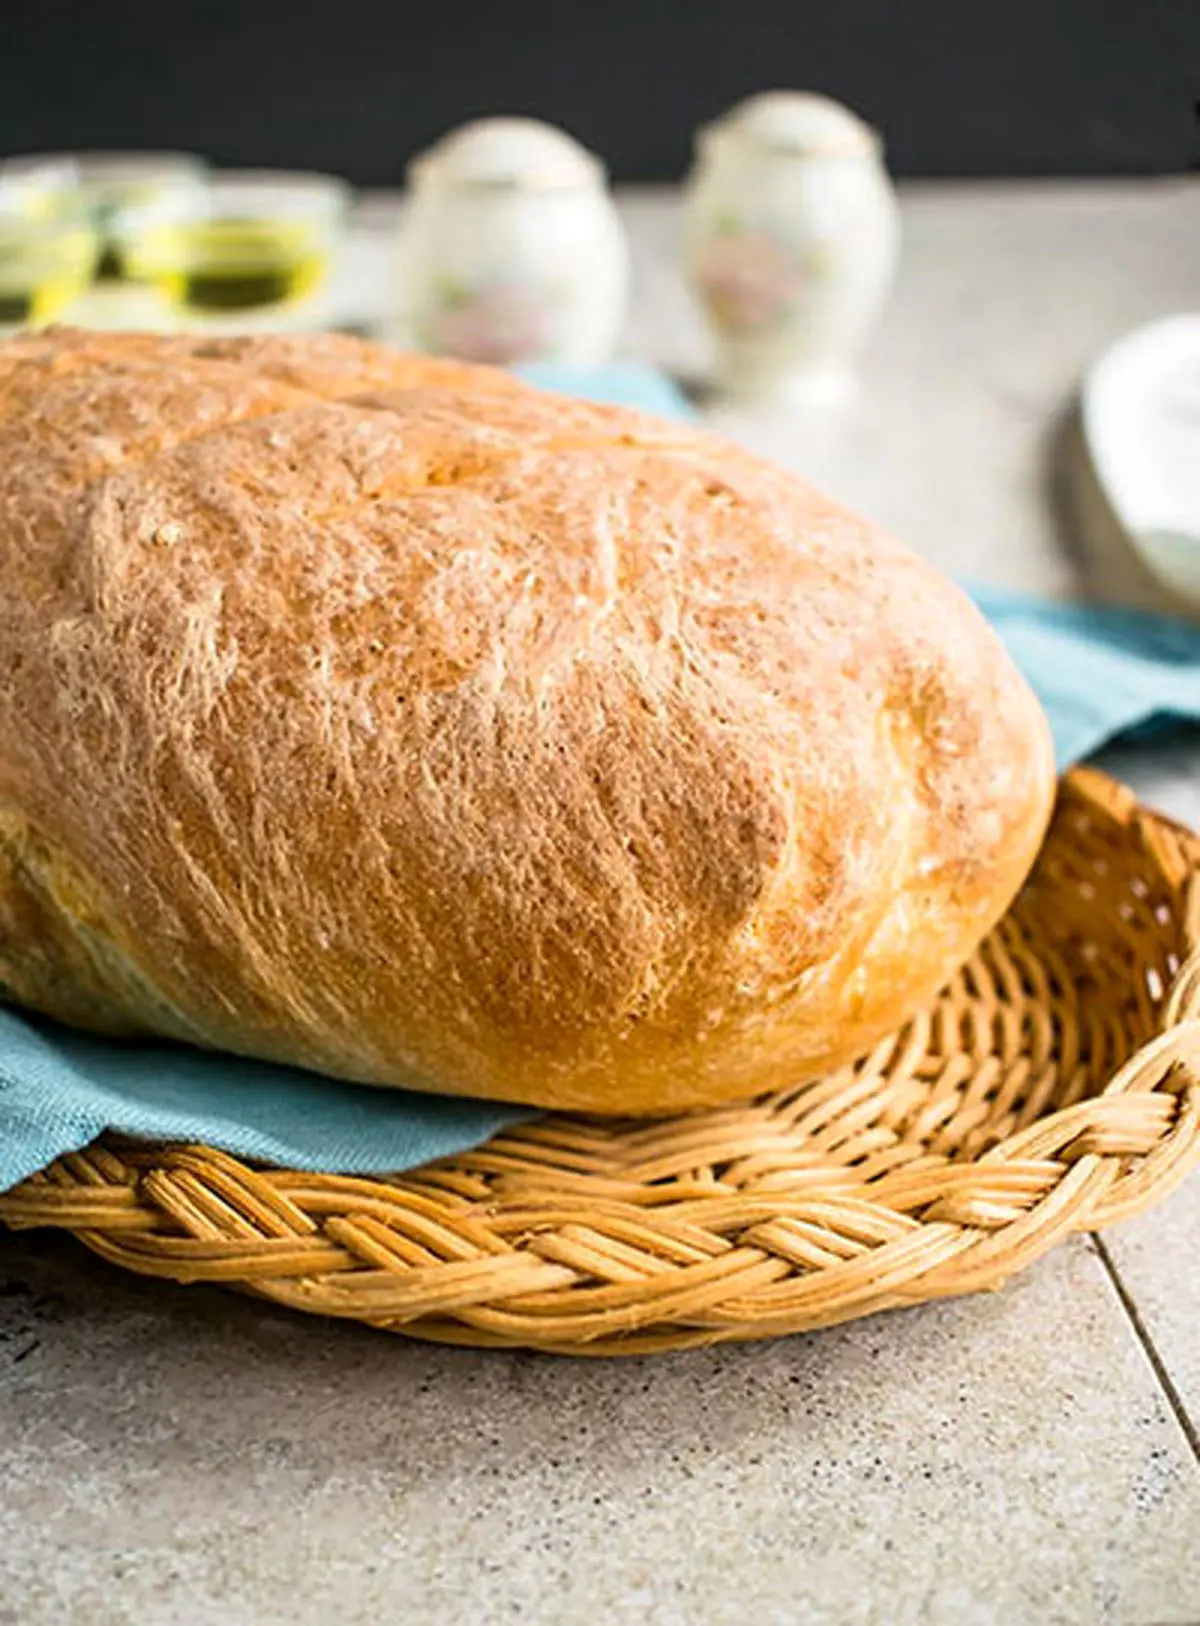 دستور تهیه نان باگت فرانسوی + آموزش کامل